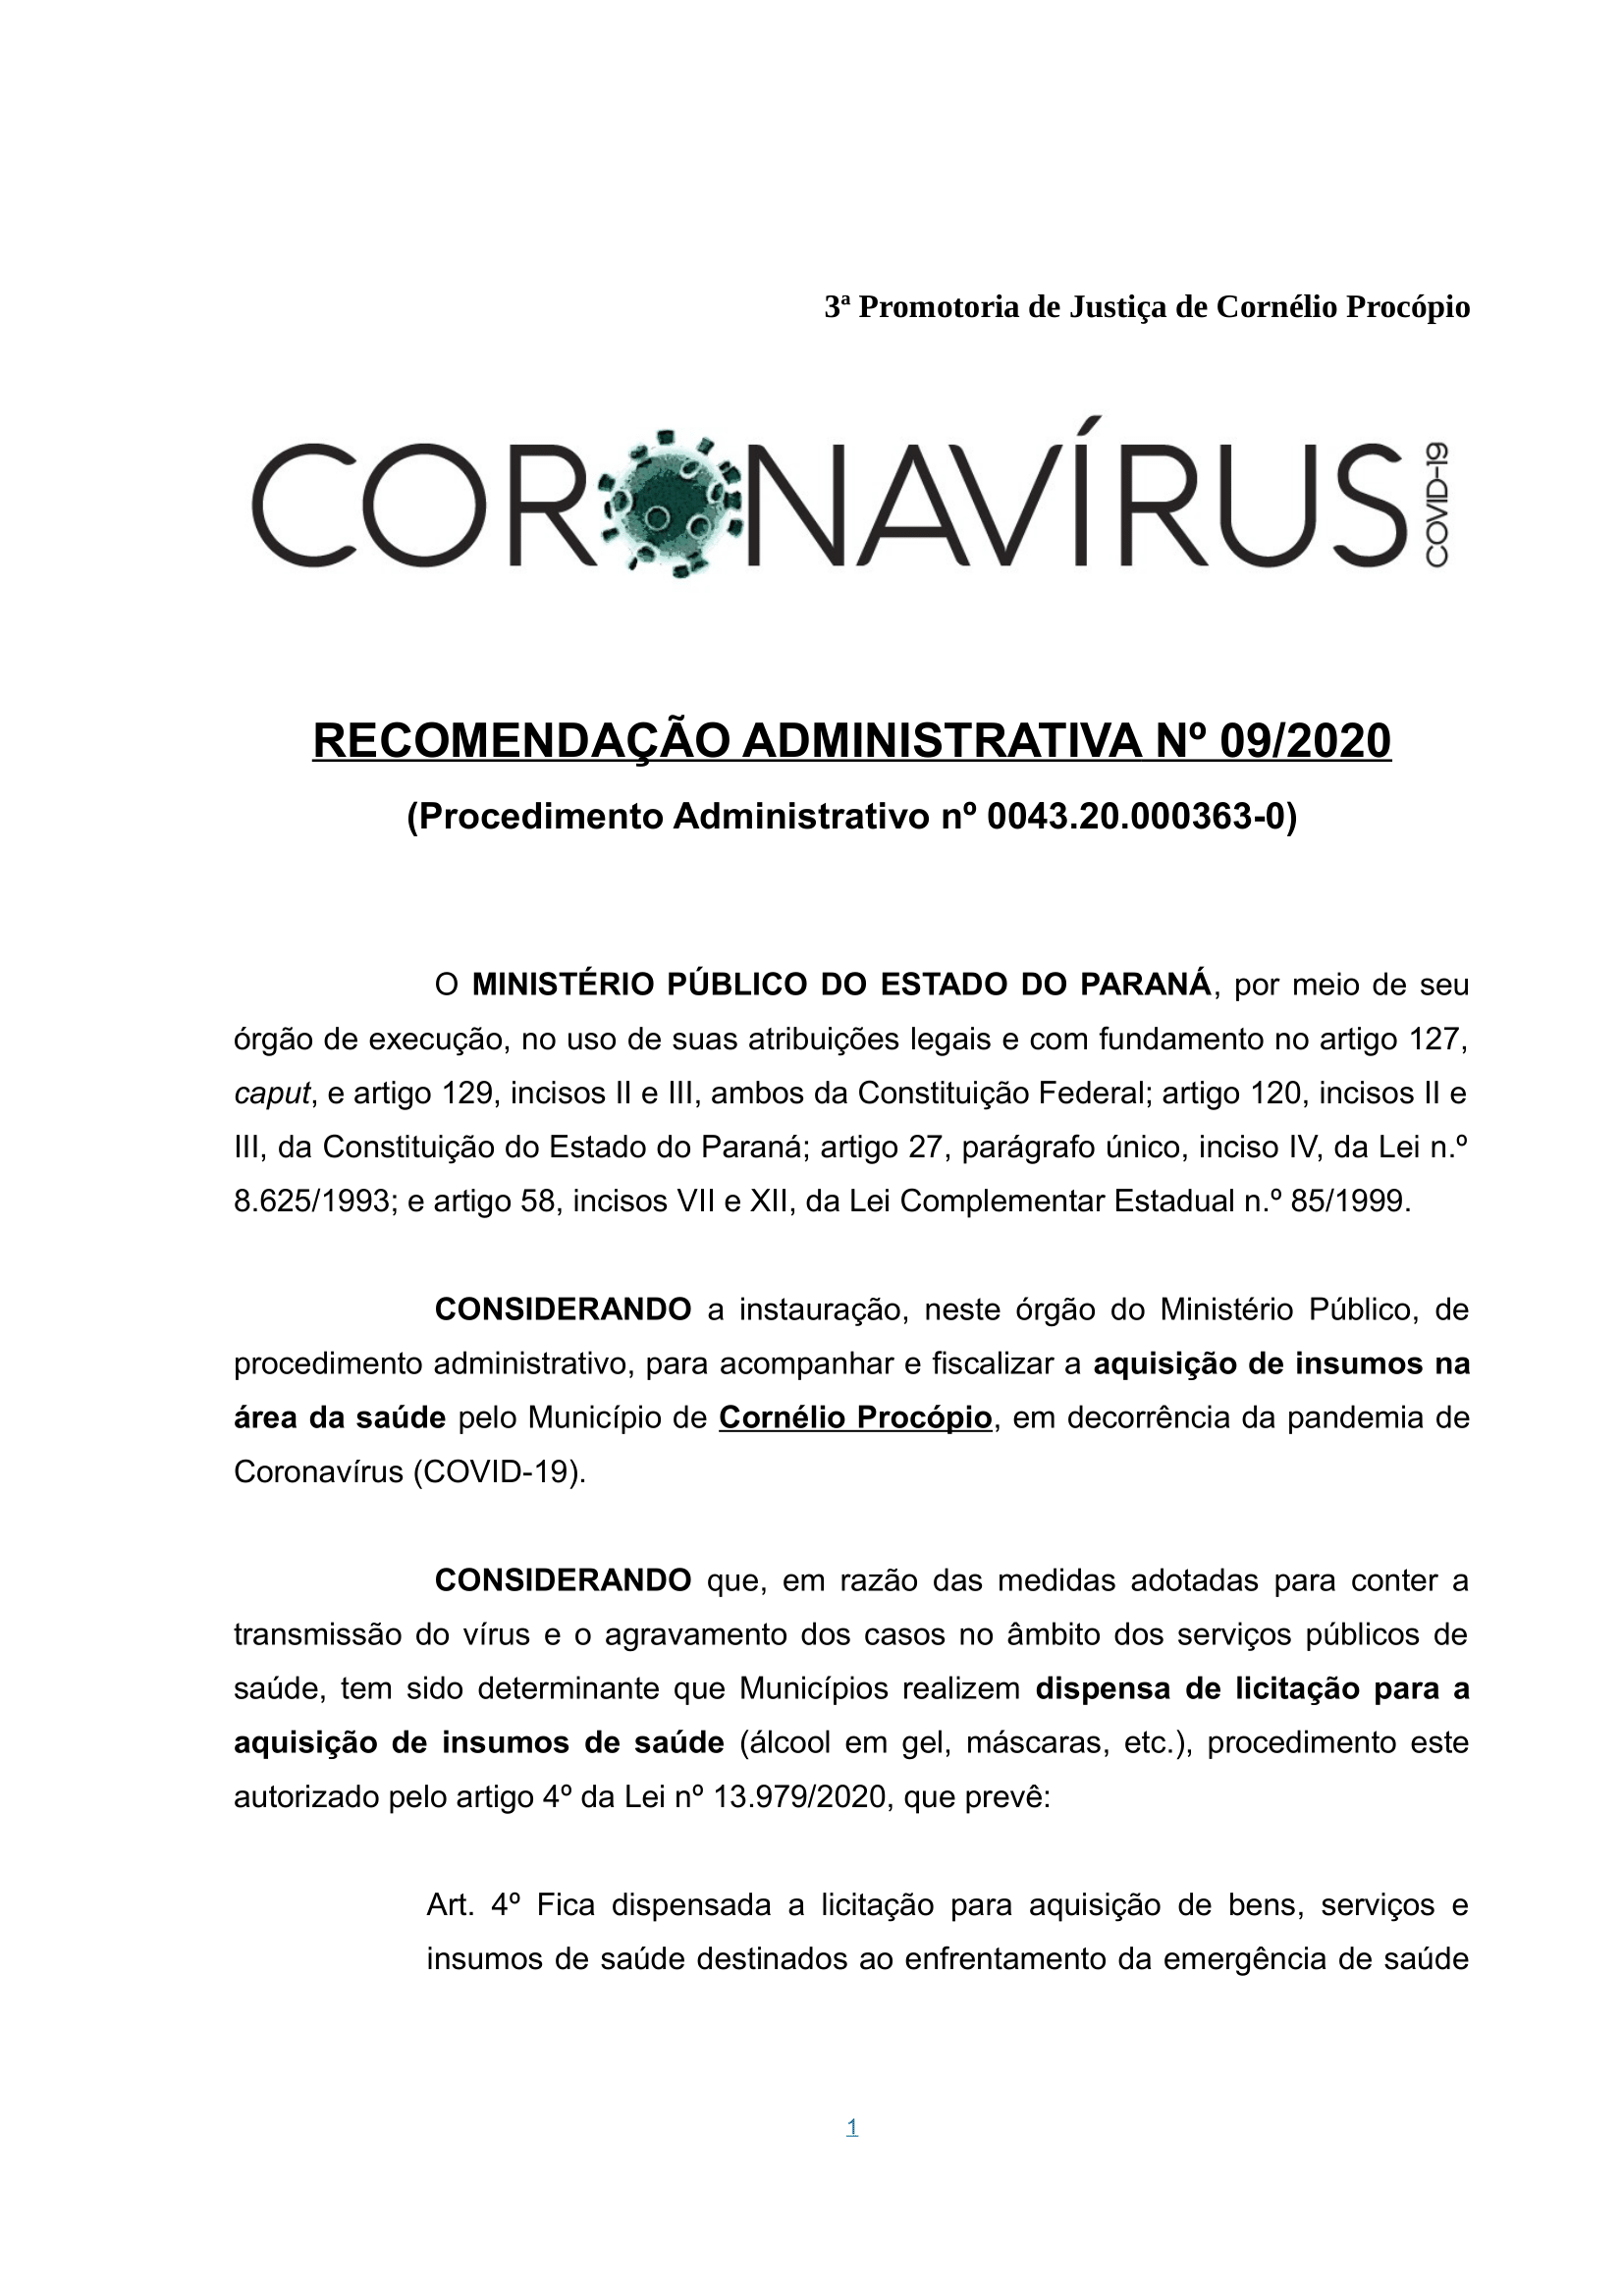 Recomendação Administrativa nº 09-2020 - Coronavirus - Requisição Administrativa-1.png